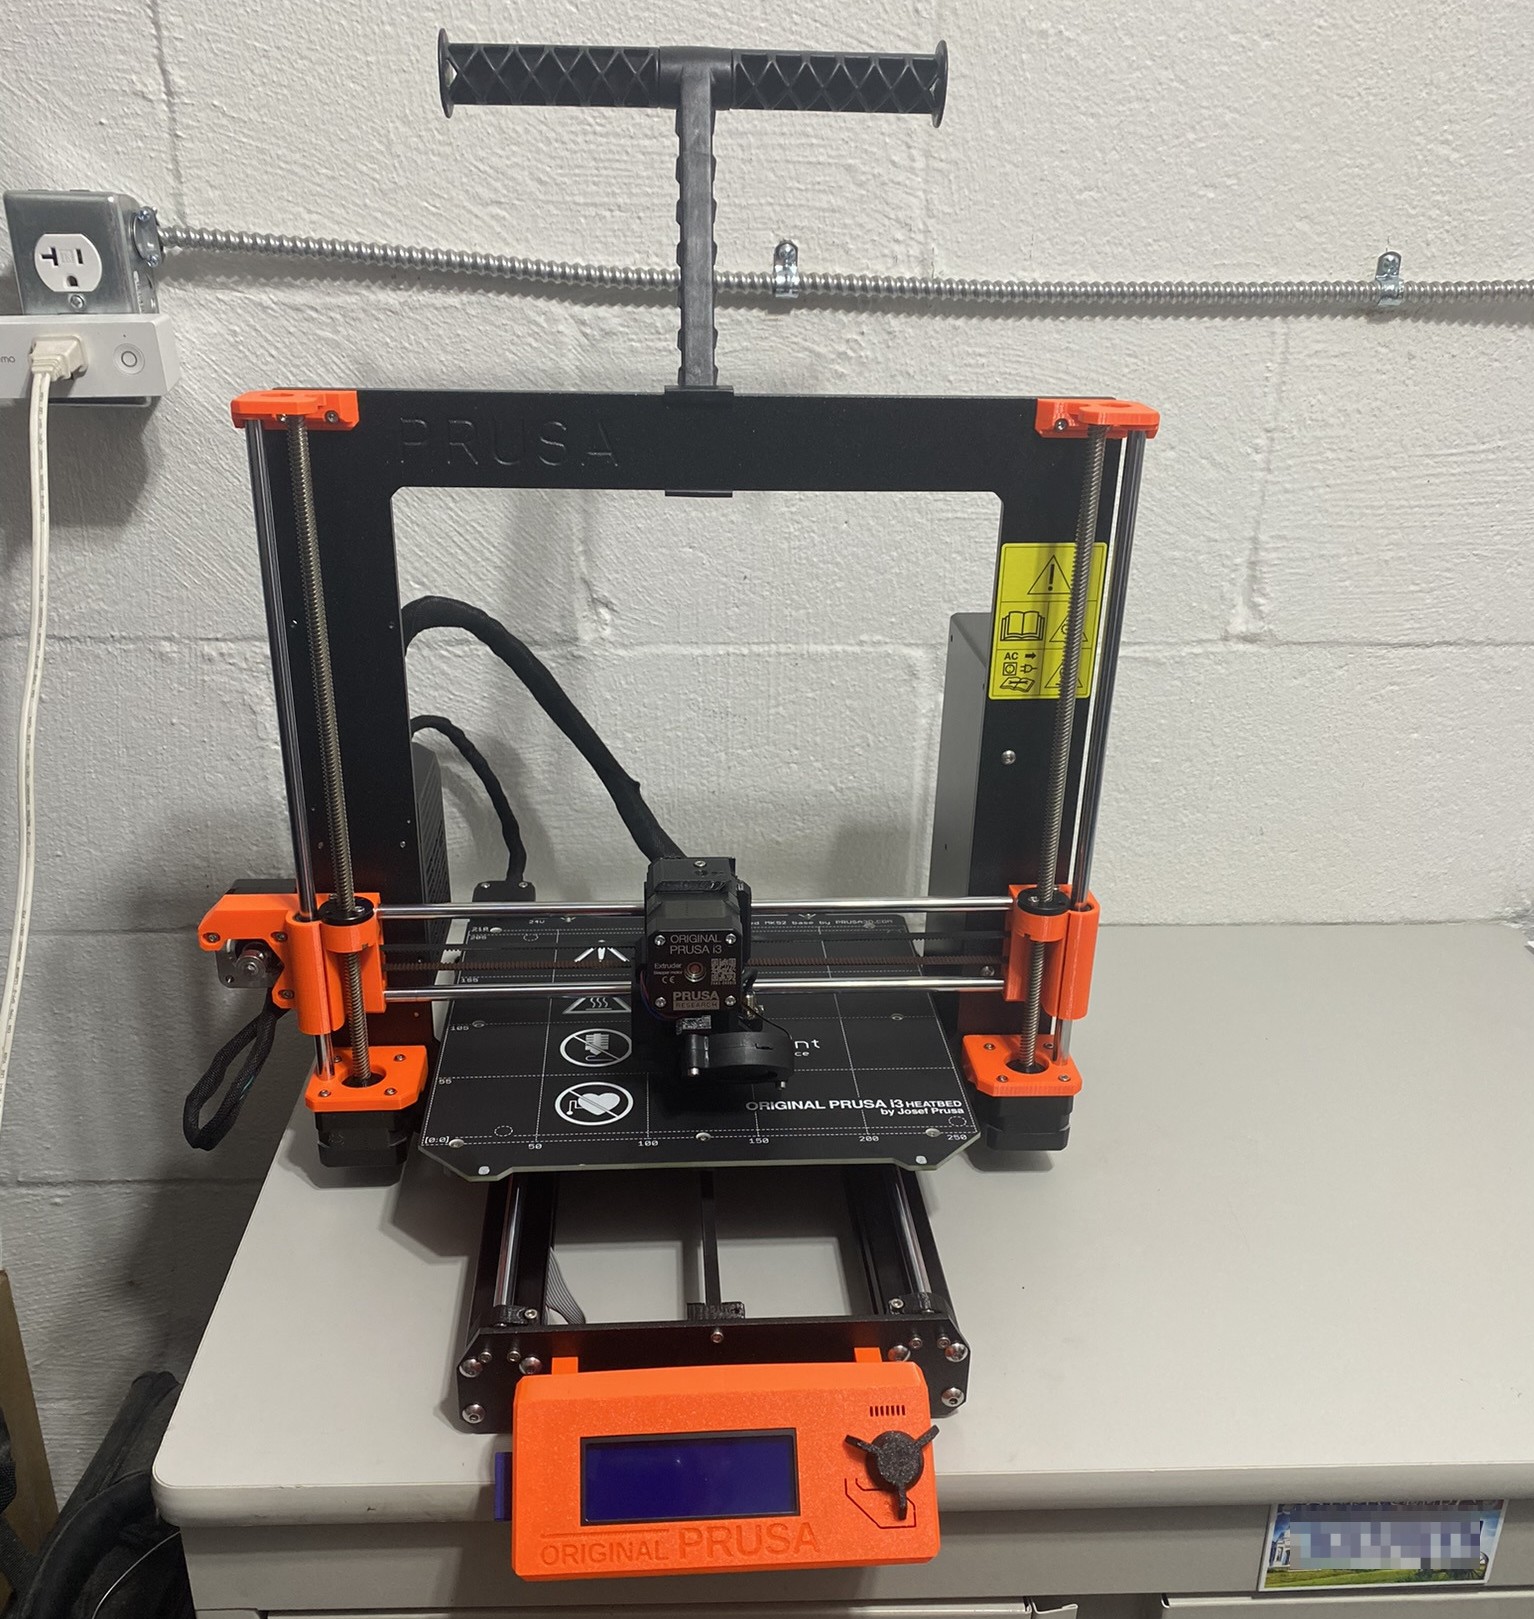 3D Printing beginings